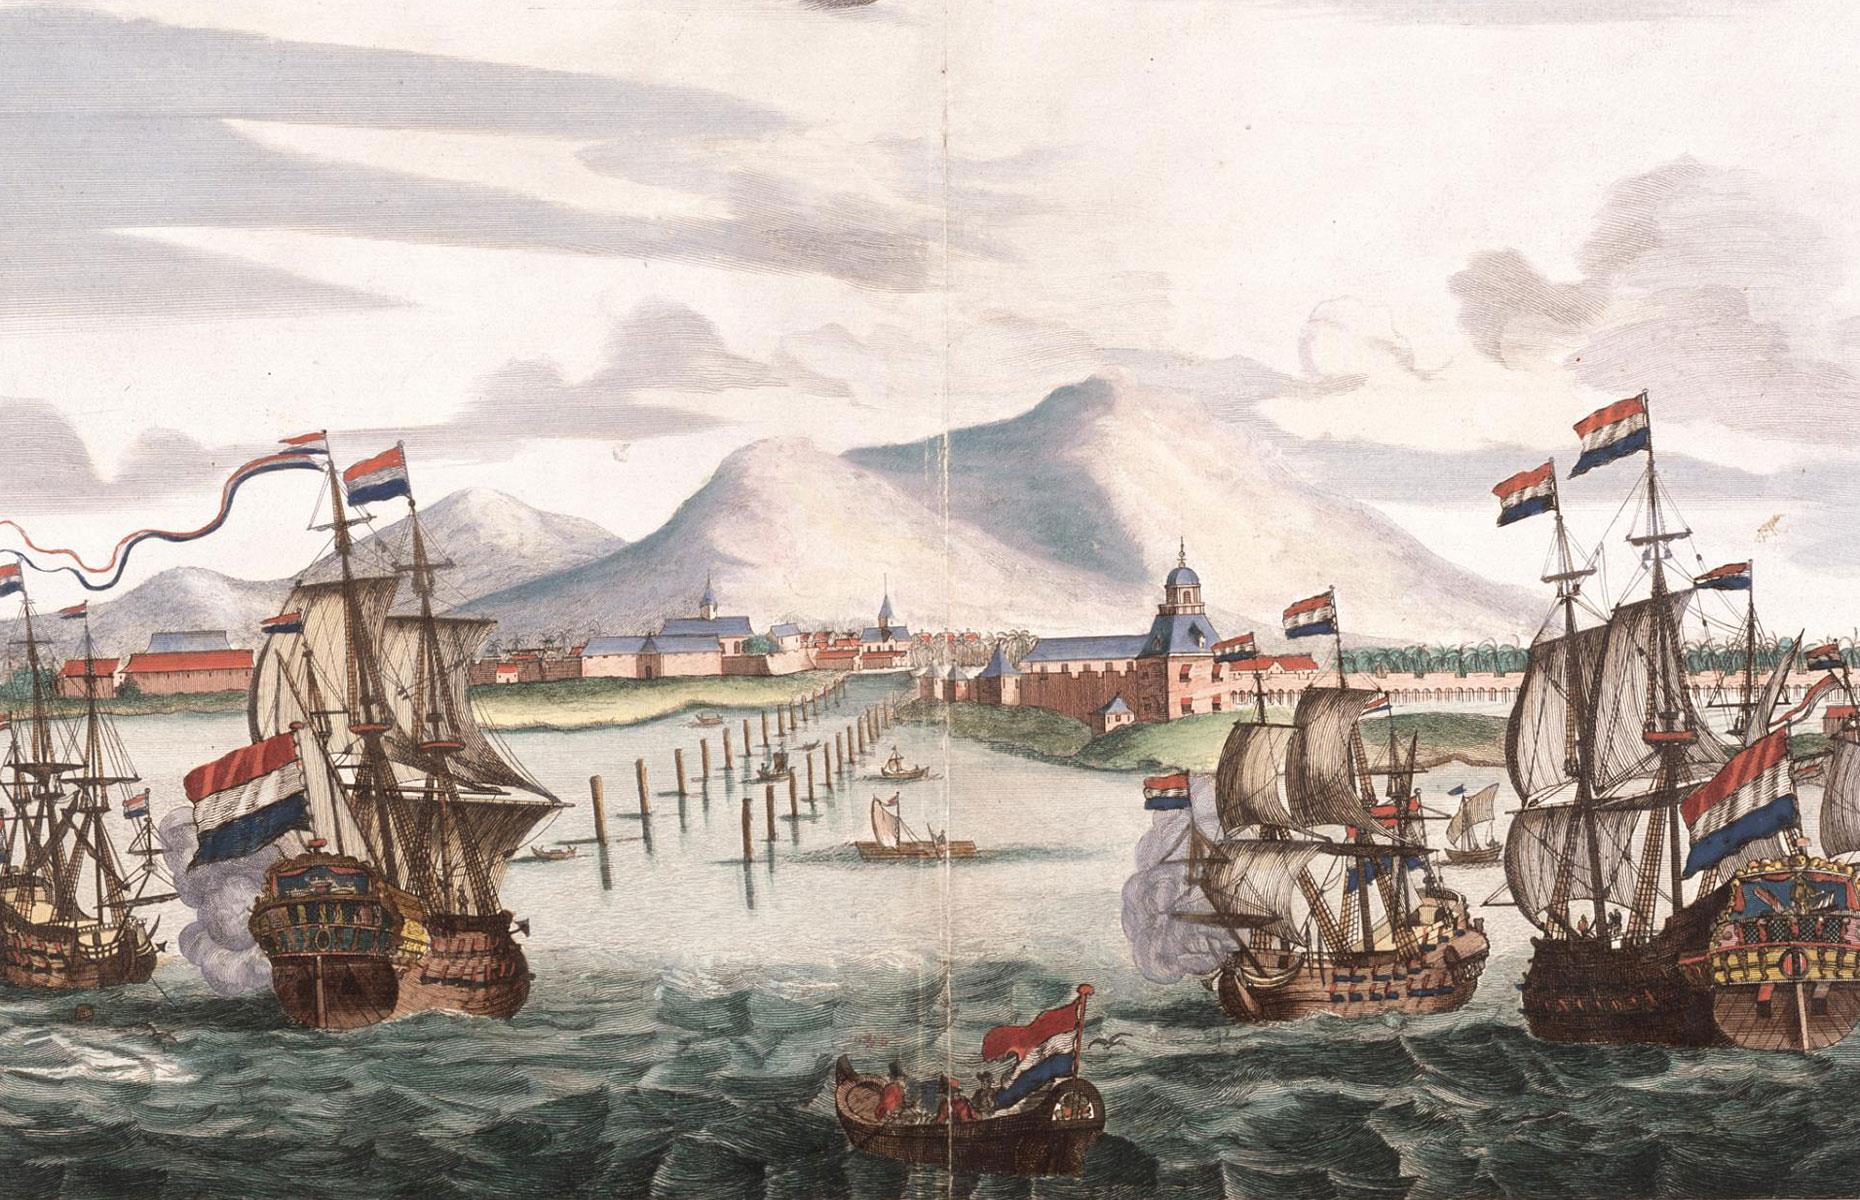 Dutch East India Company: at least $9 trillion (£7tn)